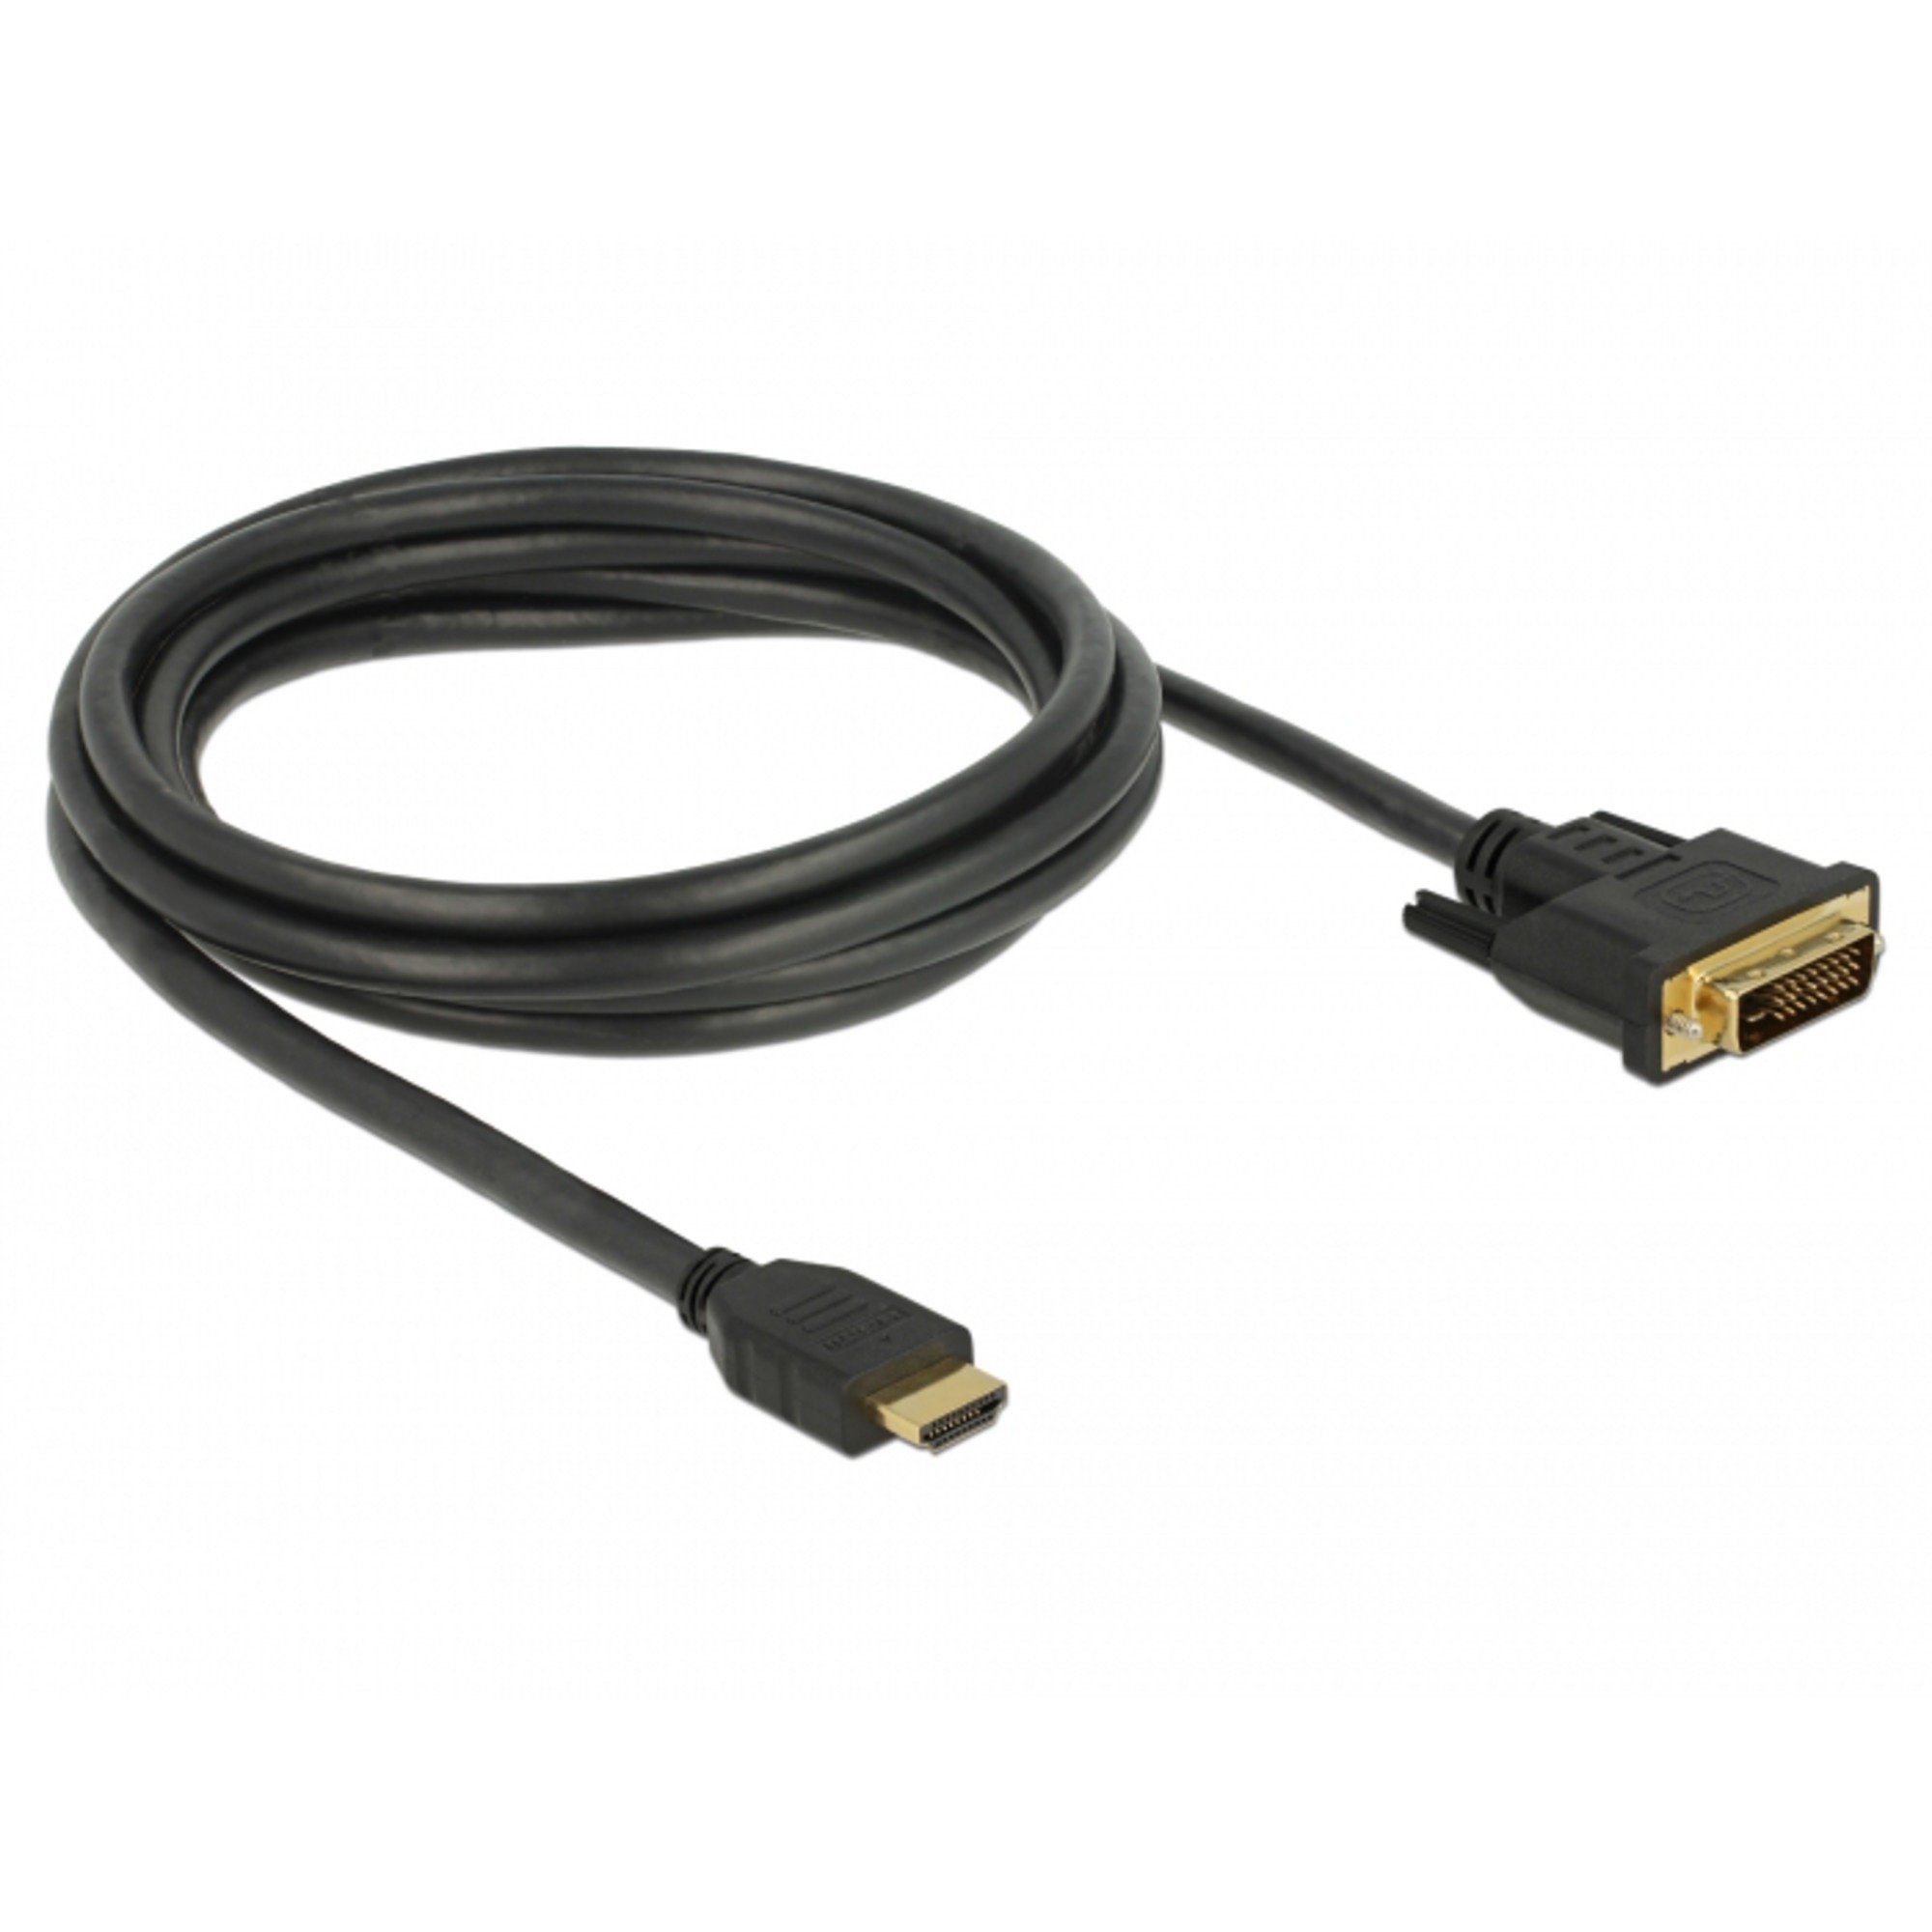 Verwendung: HDMI-Monitors Delock Anschließen HDMI-Kabel, Zum oder bidirektional HDMI DVI- Adapterkabel 24+1 > DVI eines